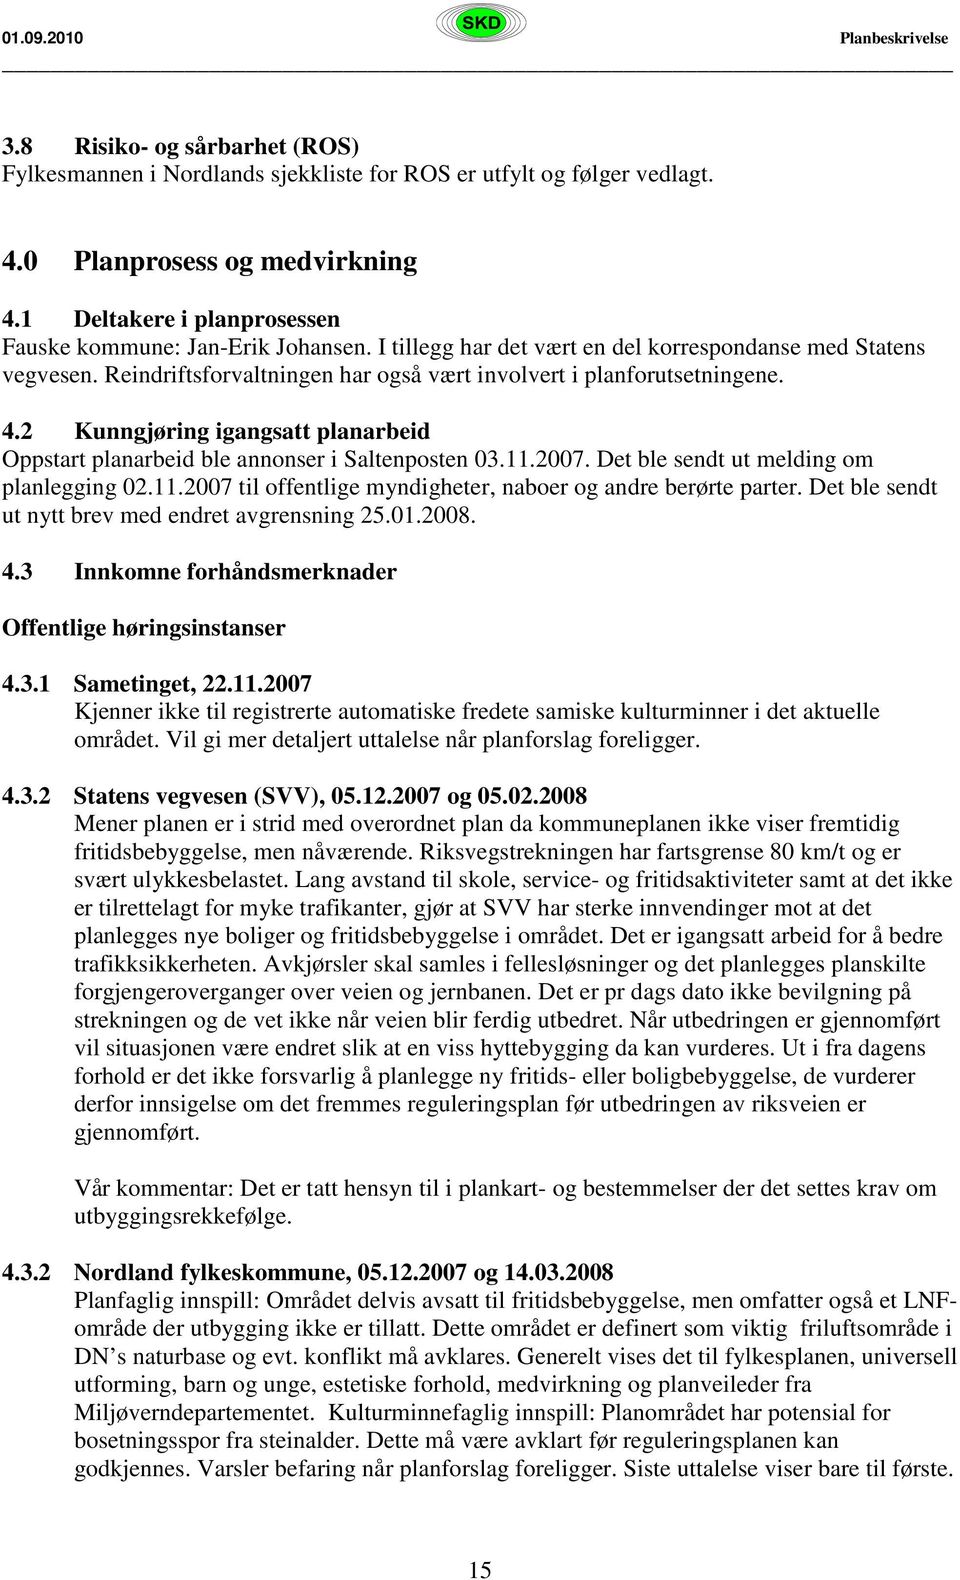 2 Kunngjøring igangsatt planarbeid Oppstart planarbeid ble annonser i Saltenposten 03.11.2007. Det ble sendt ut melding om planlegging 02.11.2007 til offentlige myndigheter, naboer og andre berørte parter.